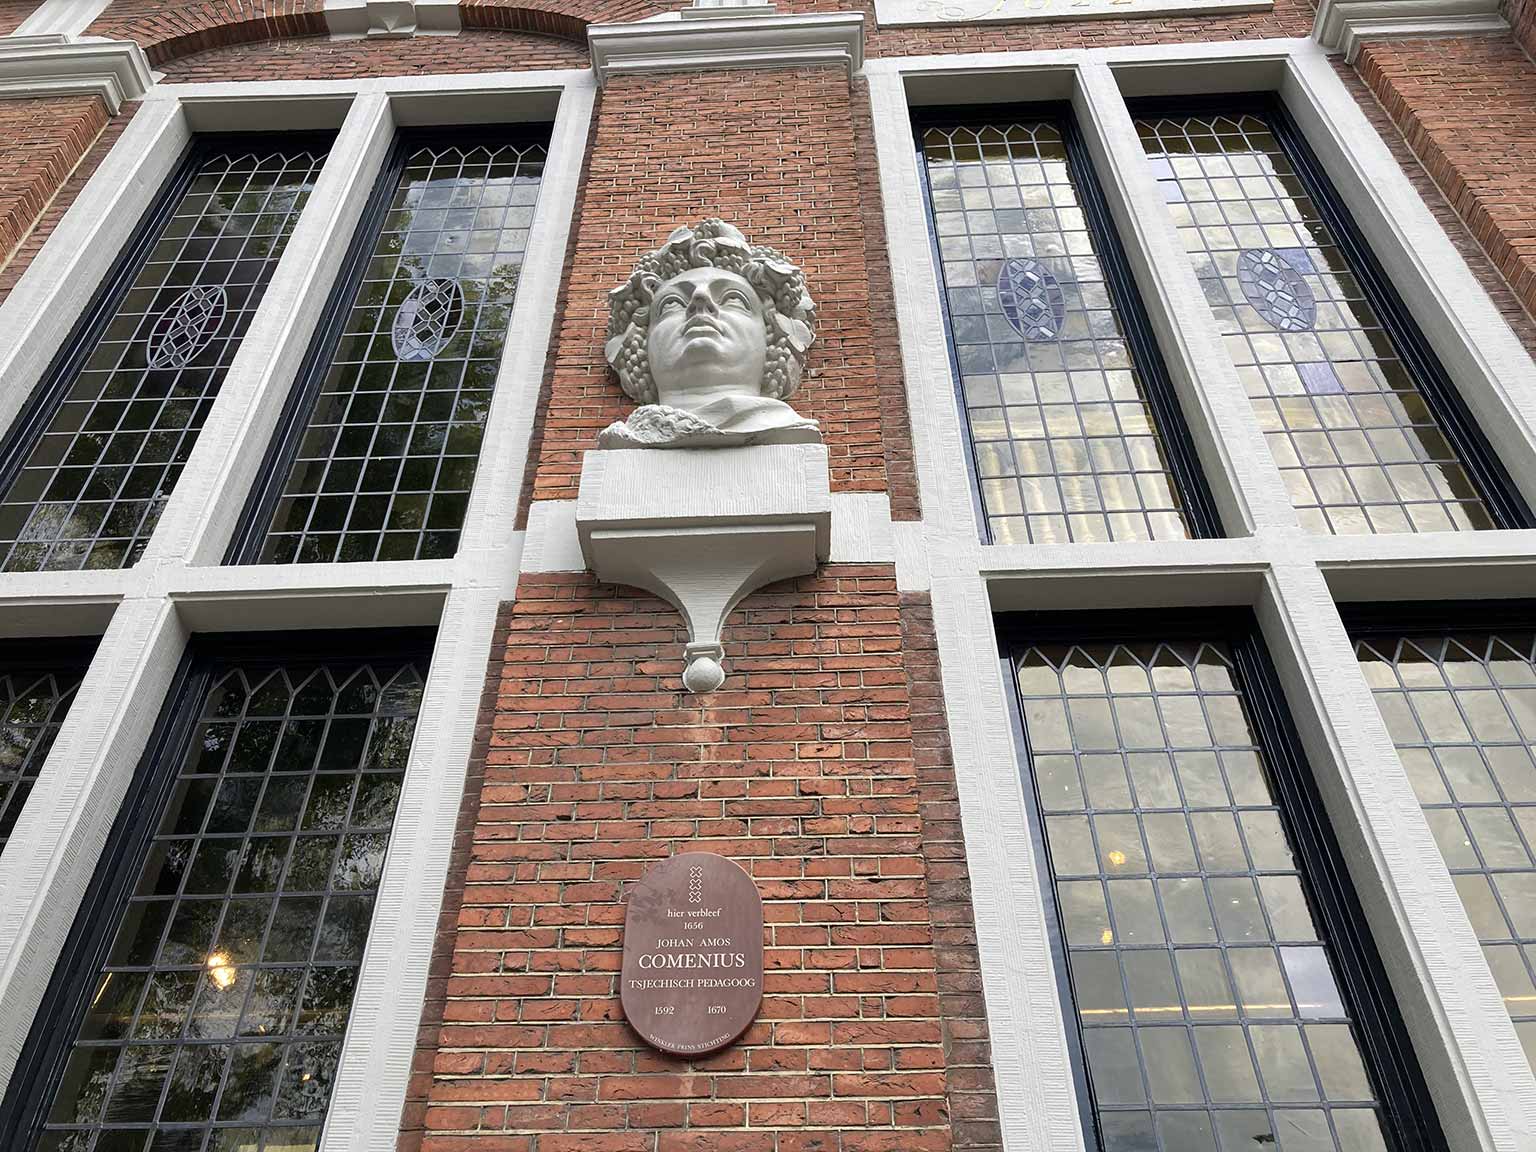 Plaque commemorating Comenius’ stay in the Huis met de Hoofden, Amsterdam